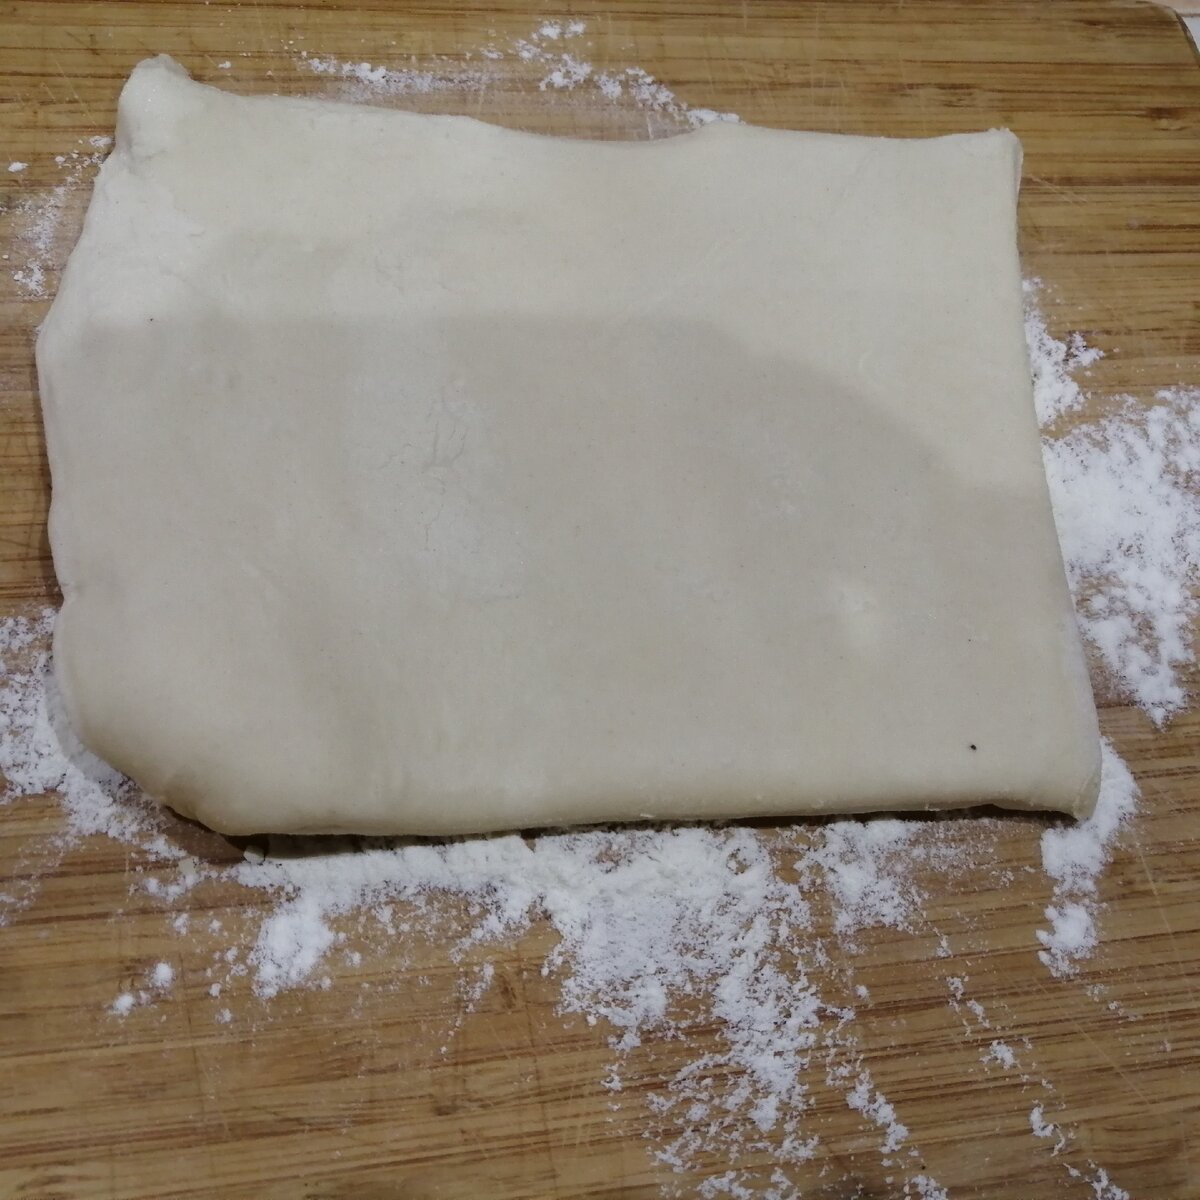 Как разморозить слоеное тесто быстро из морозилки